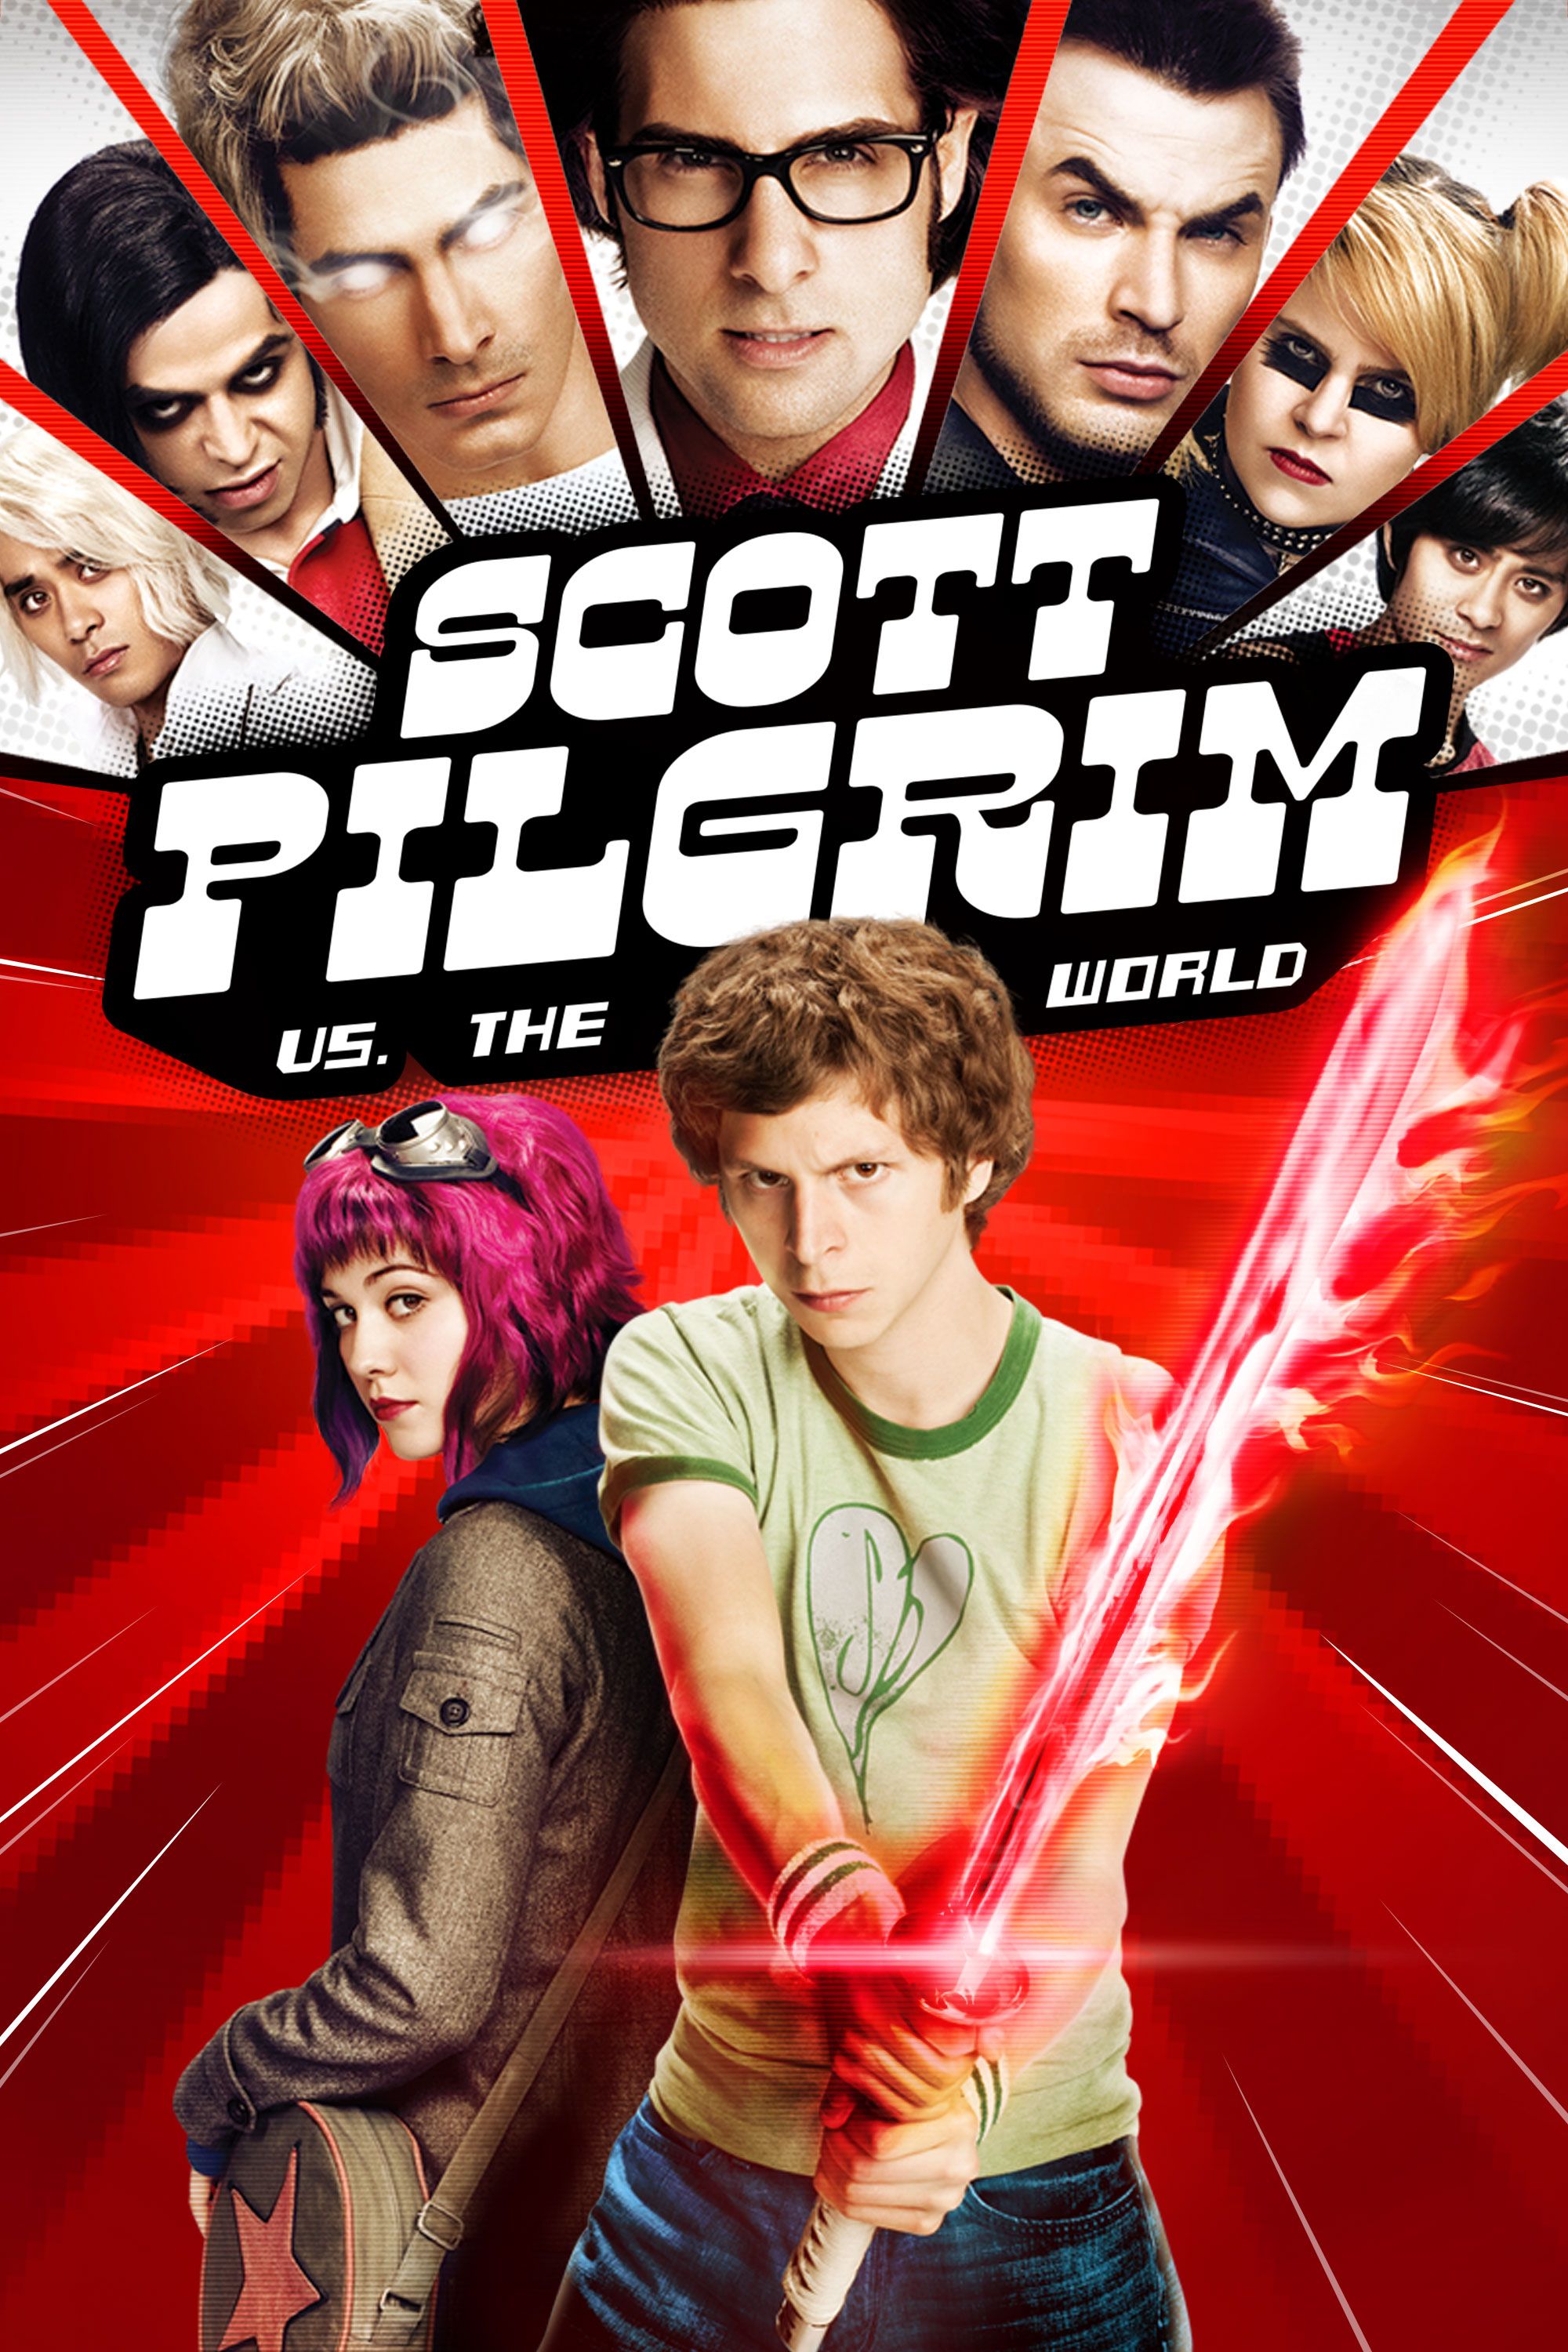 Scott Pilgrim vs. The World | Full Movie | Movies Anywhere